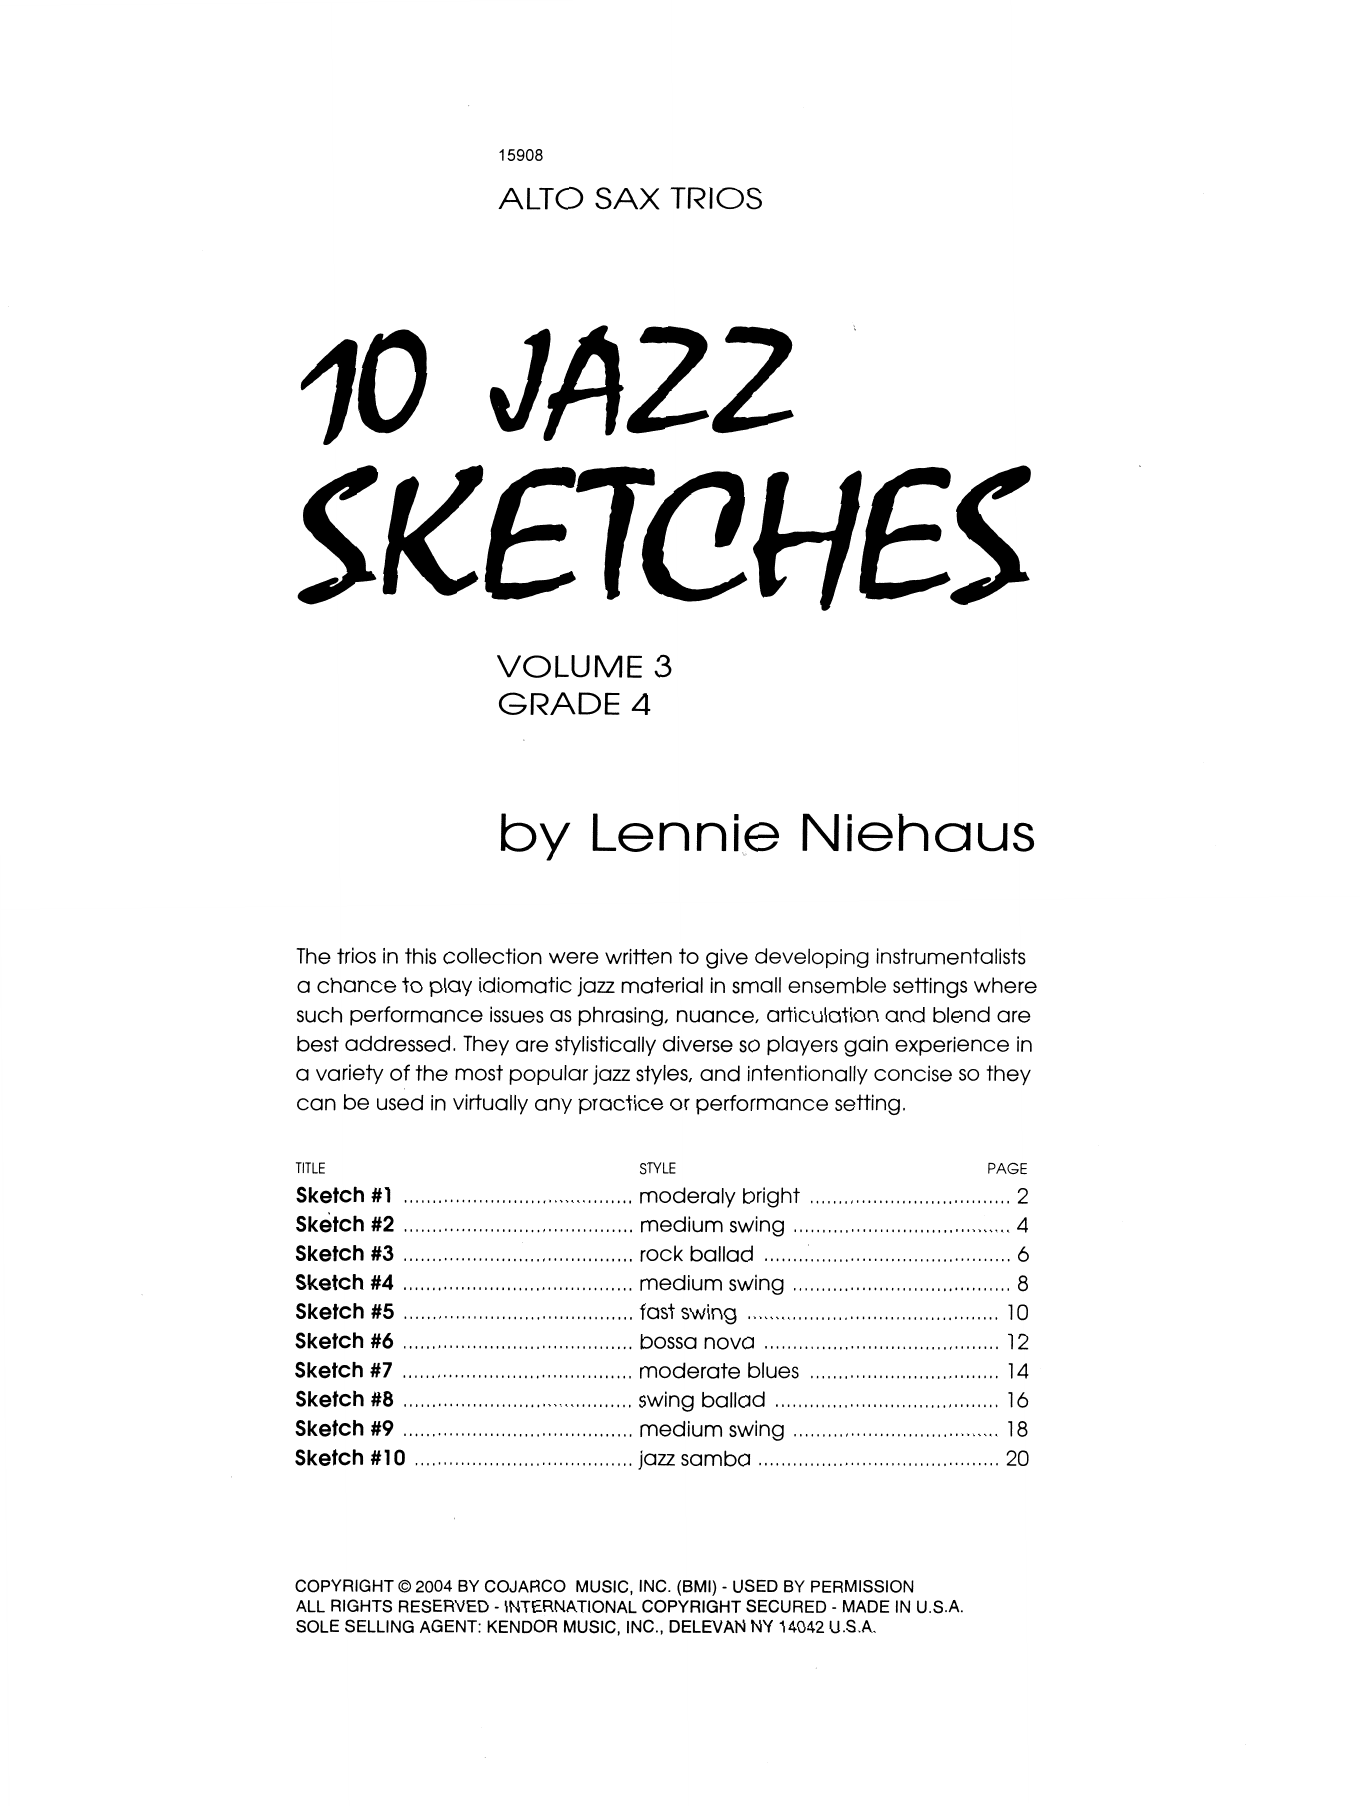 Download Lennie Niehaus 10 Jazz Sketches, Volume 3 (altos) Sheet Music